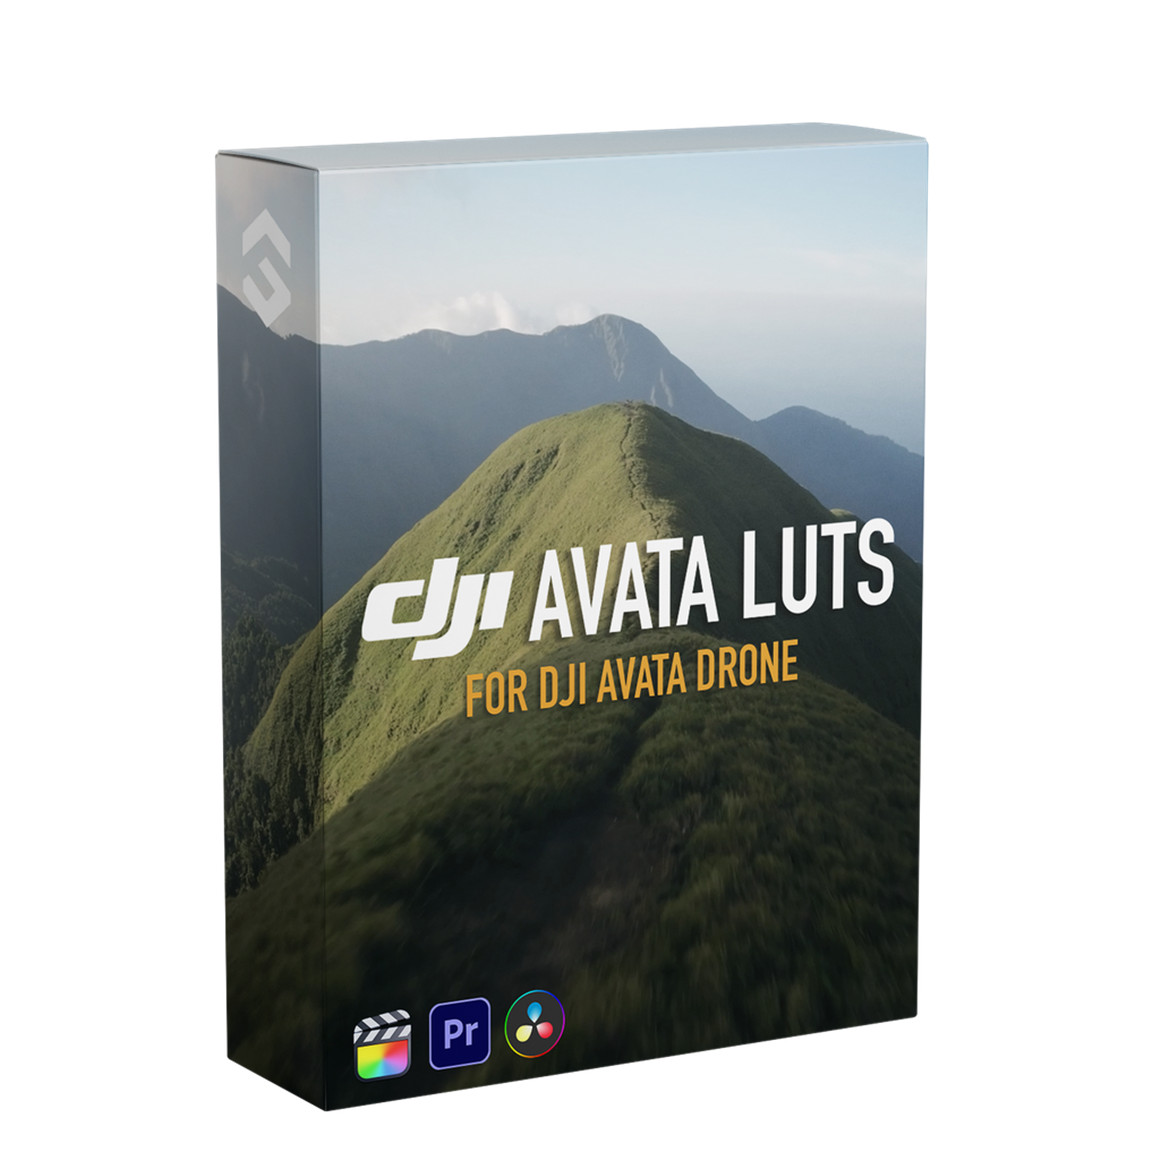 JustKay 大疆Avata无人机穿越机航拍LUT调色预设包 DJI Avata LUTs 插件预设 第2张